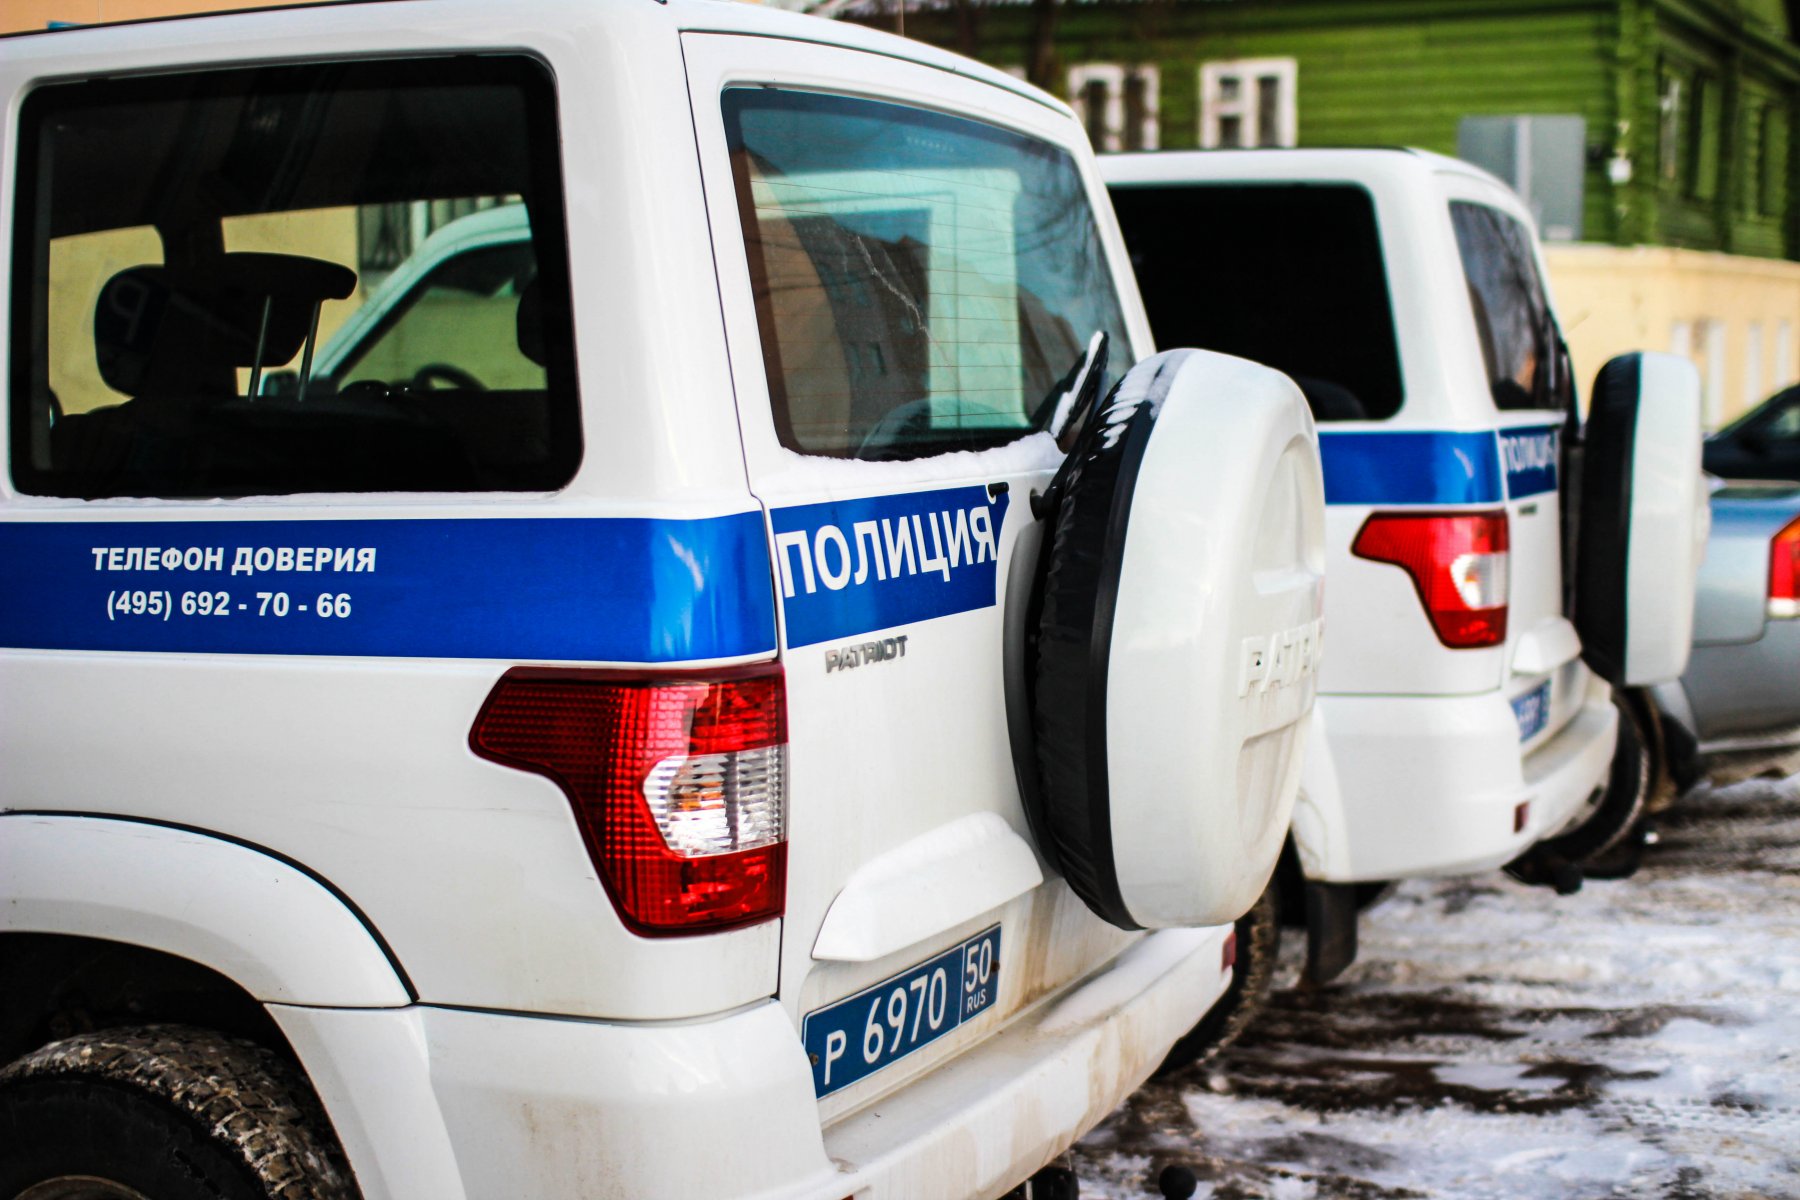 Полиция нашла труп, спрятанный в диване, в квартире одного из домов на западе Москвы